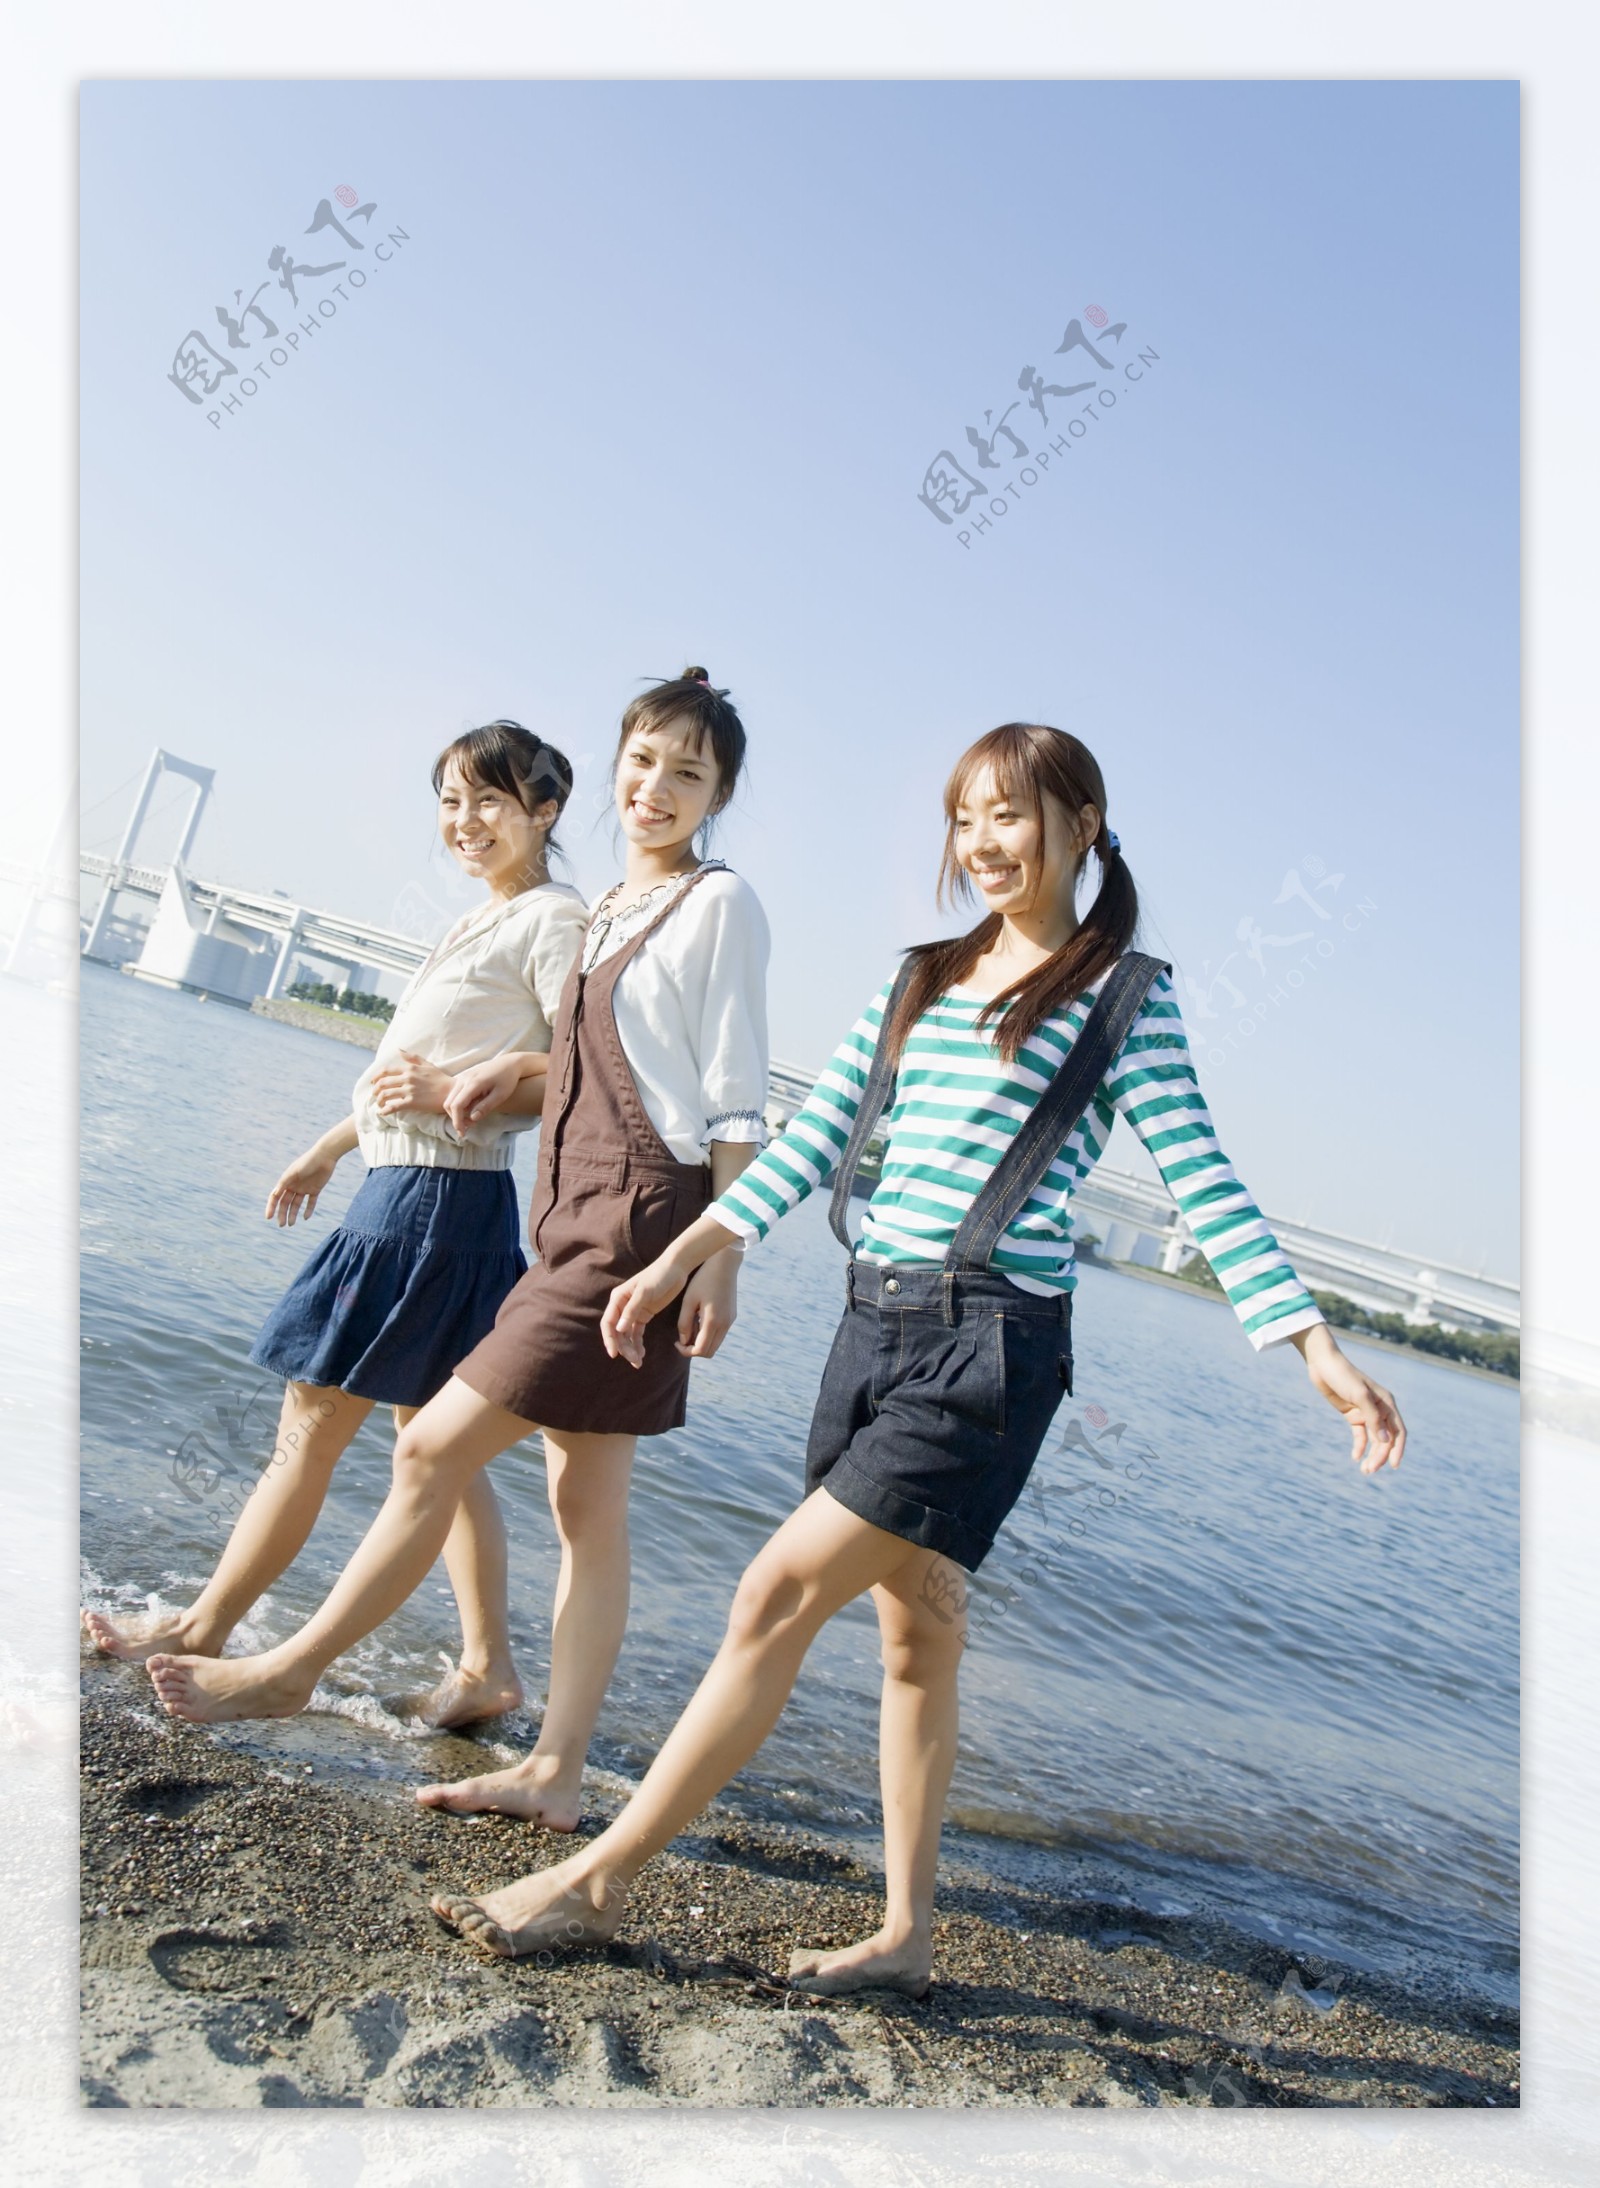 沙滩上散步的女孩图片